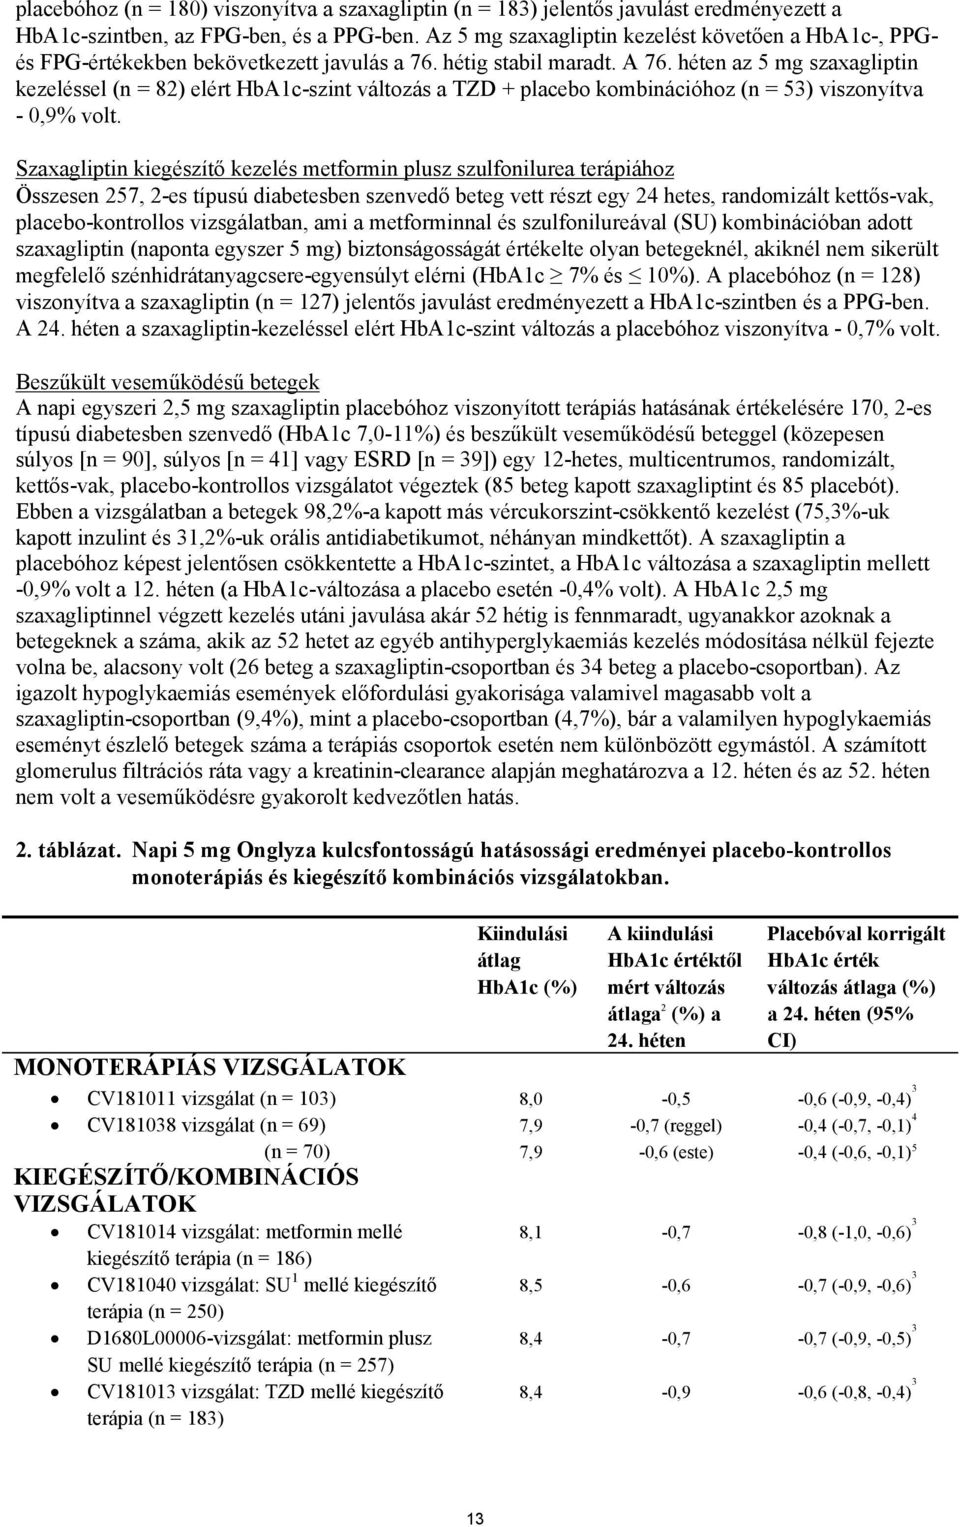 héten az 5 mg szaxagliptin kezeléssel (n = 82) elért HbA1c-szint változás a TZD + placebo kombinációhoz (n = 53) viszonyítva - 0,9% volt.